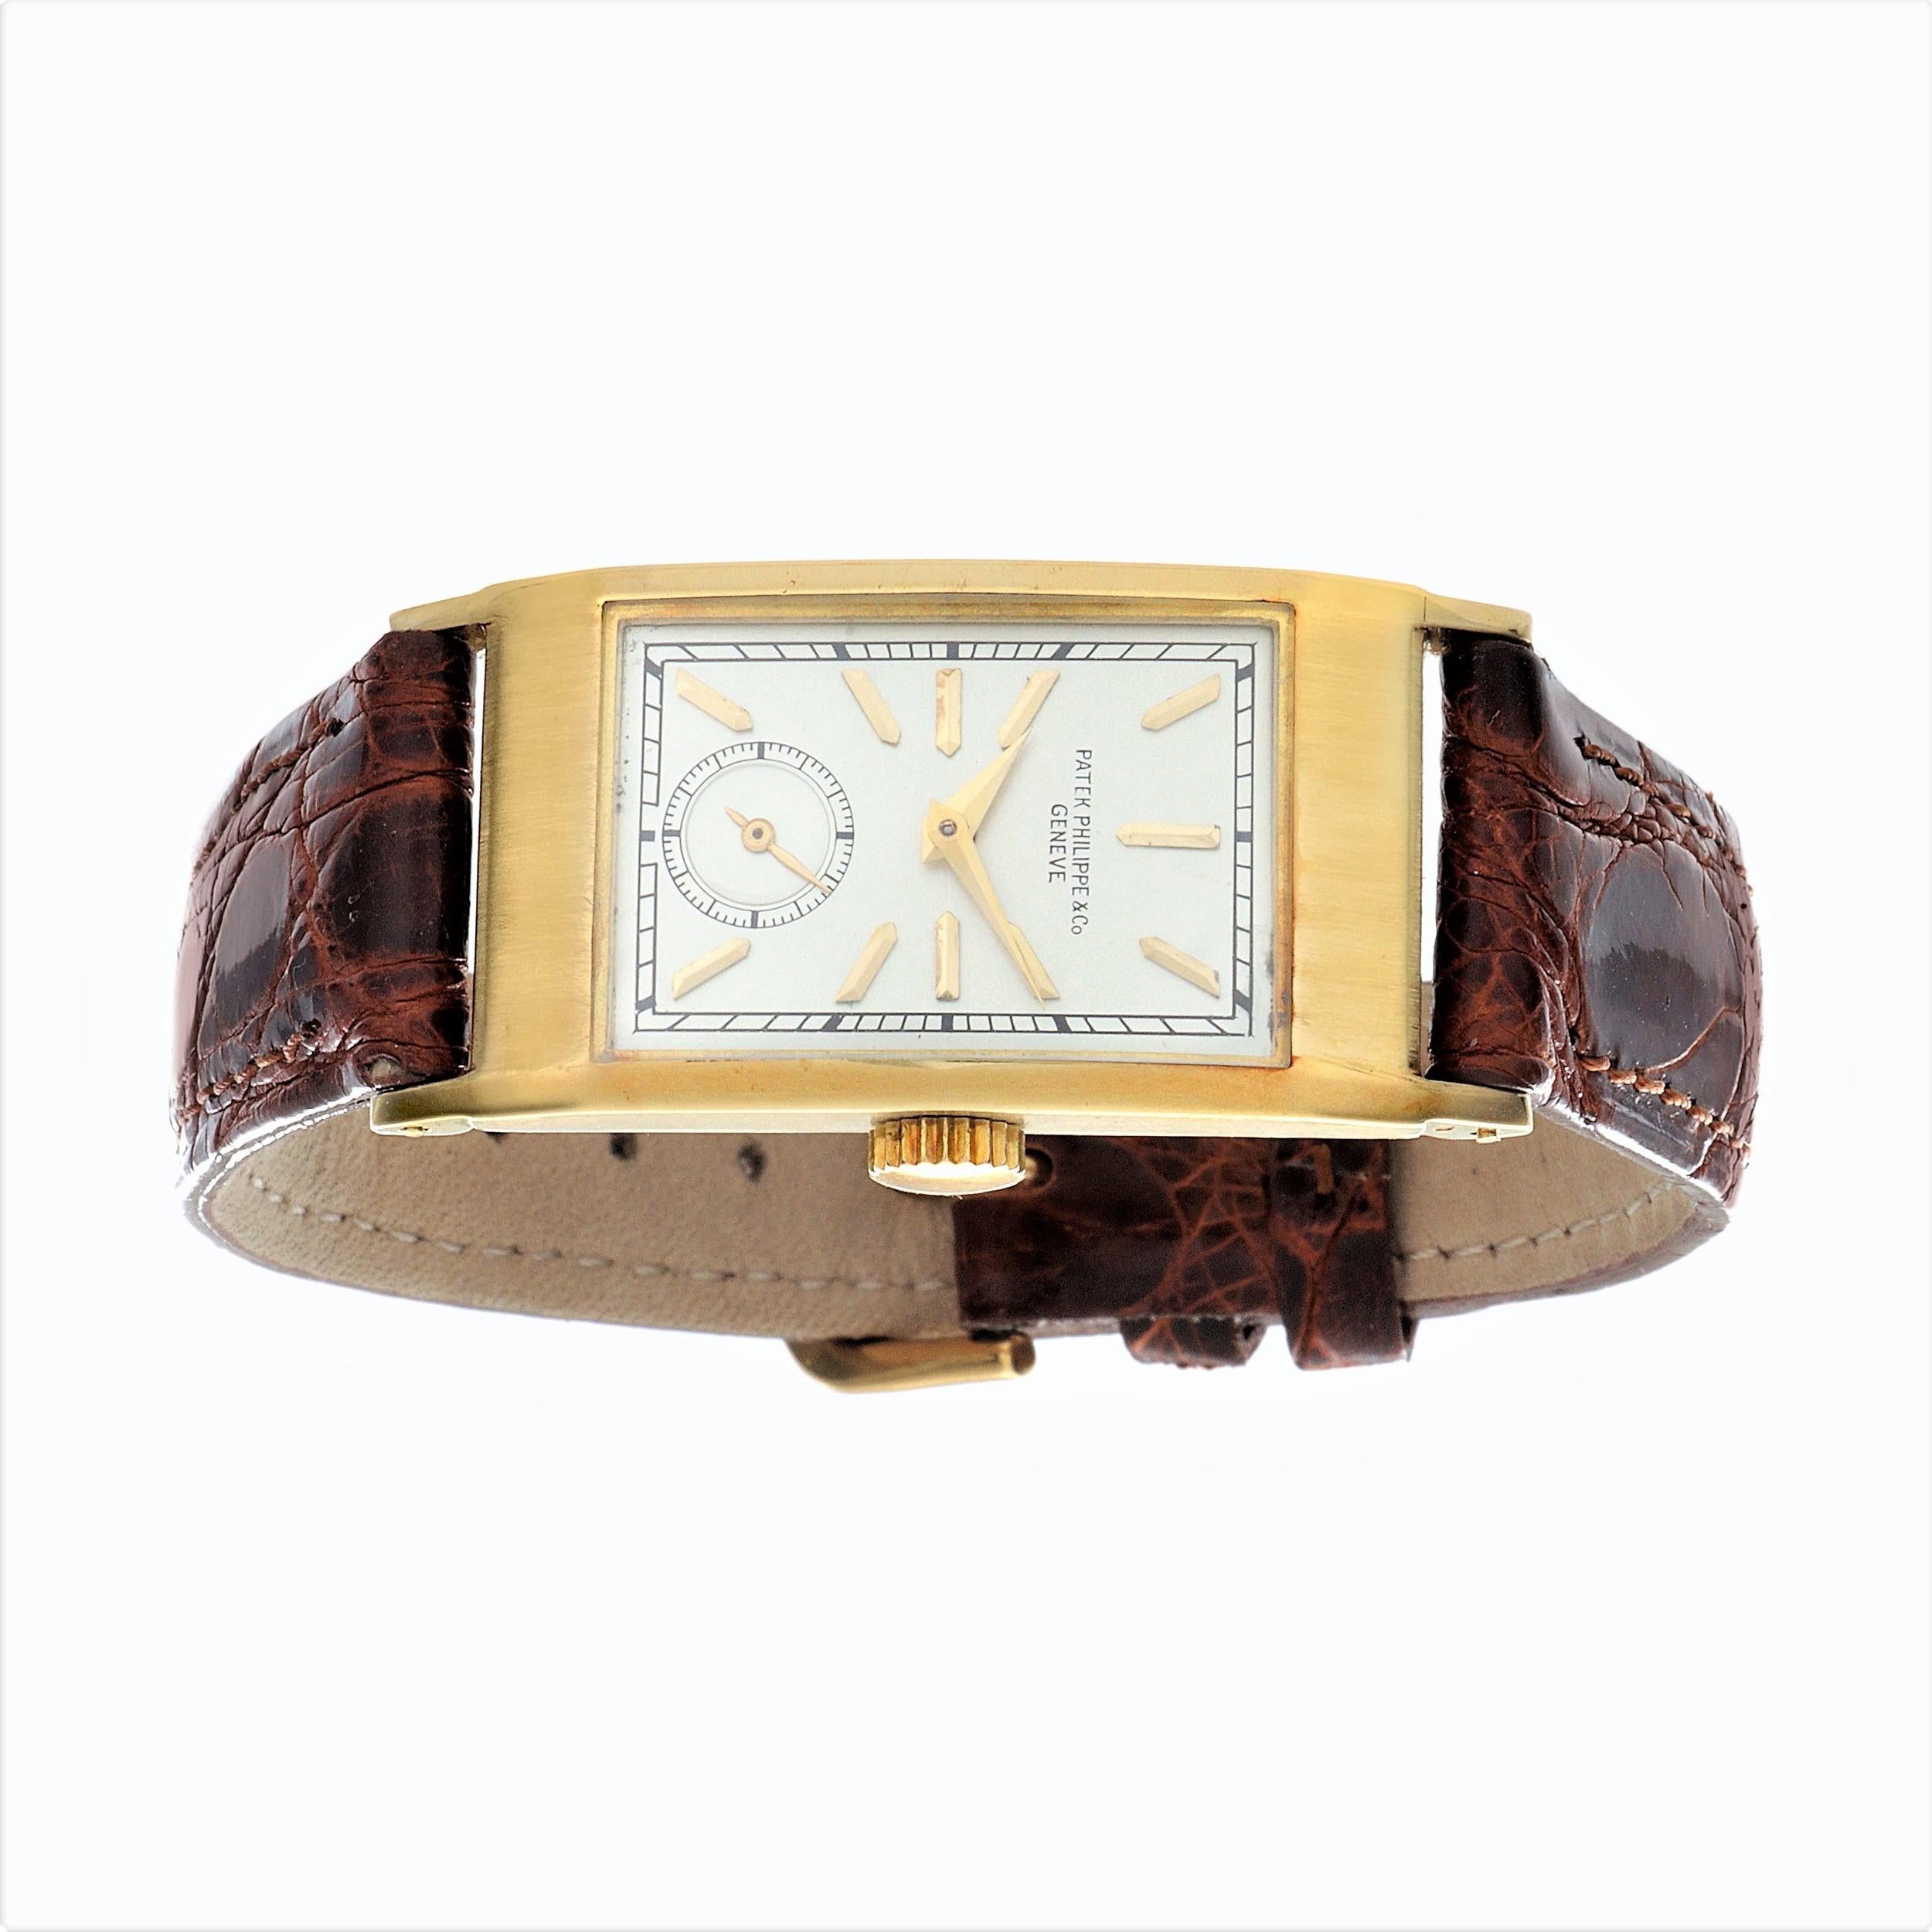 Einleitung:
Patek Philippe 425J Tegolino Art Deco-Uhr, Maße 42,5 x 20,5.  Die Uhr ist mit einem Kaliber 9